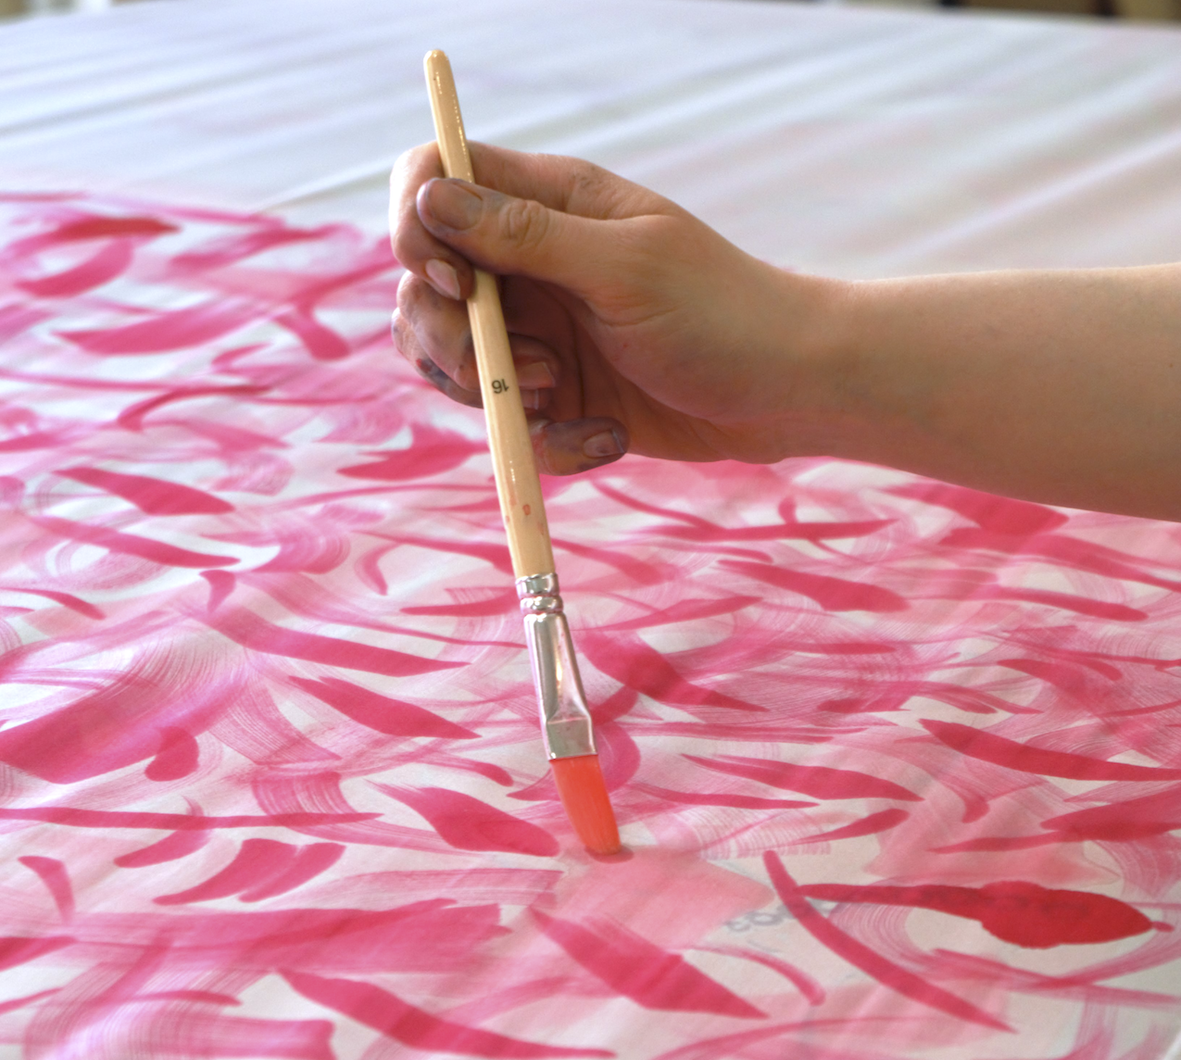 Atelier de Soierie - Initiation au peint-main sur soie